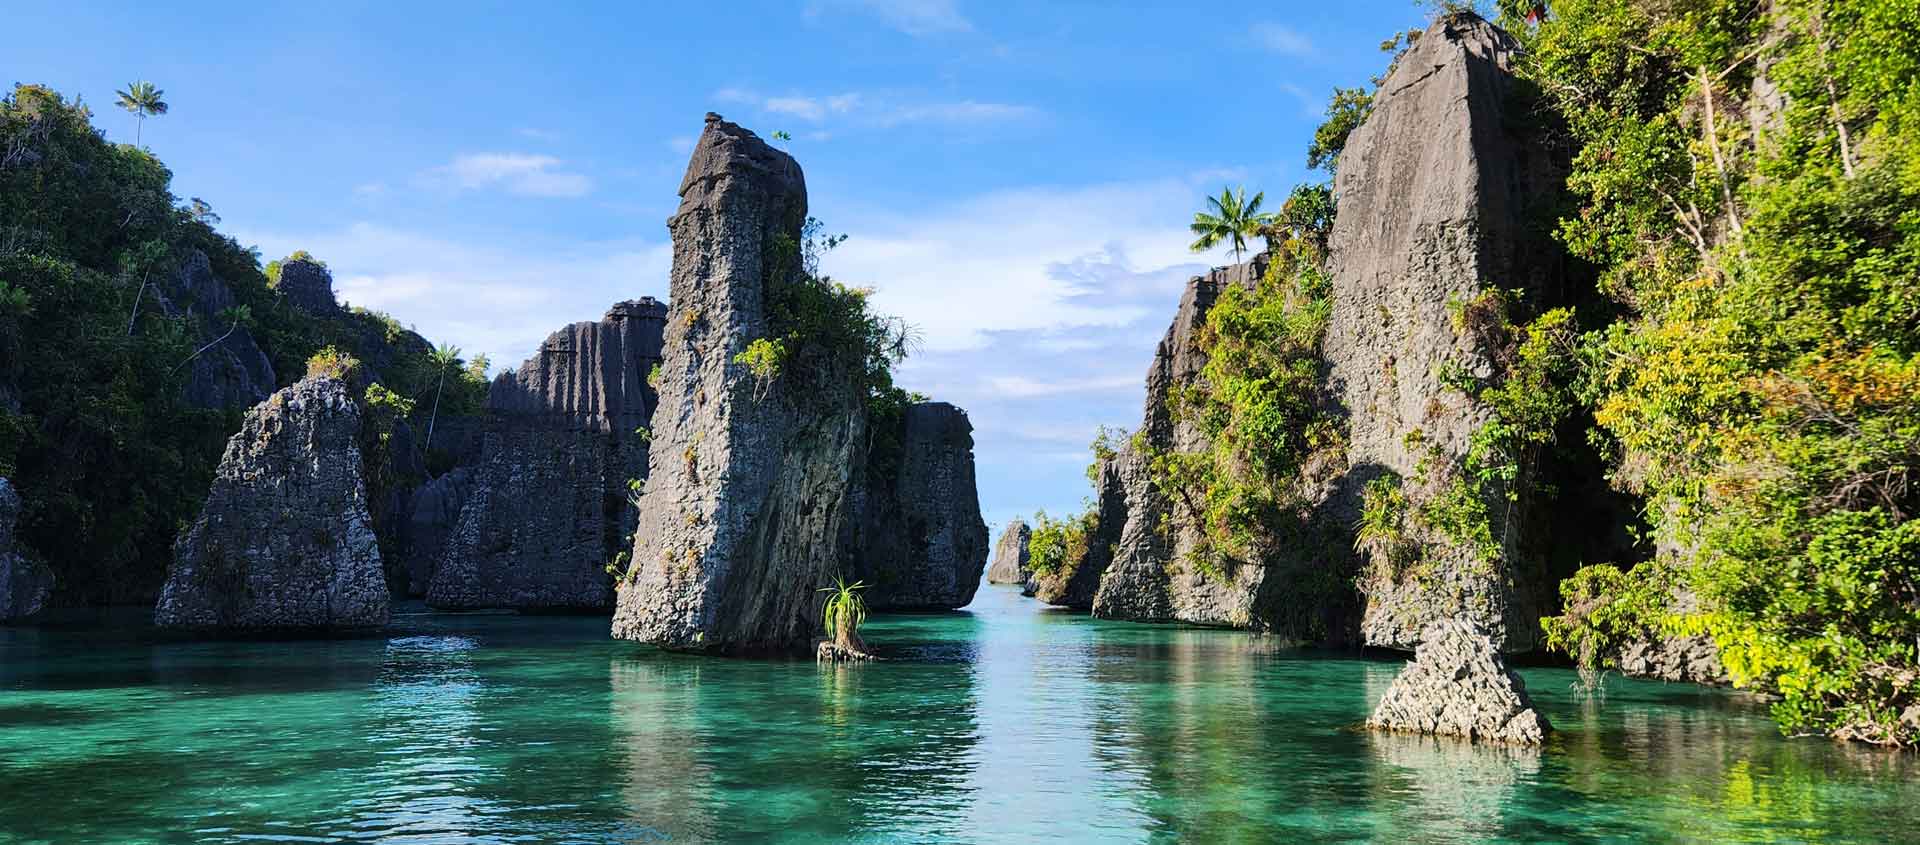 Indonesia cruise image showing Missal Island